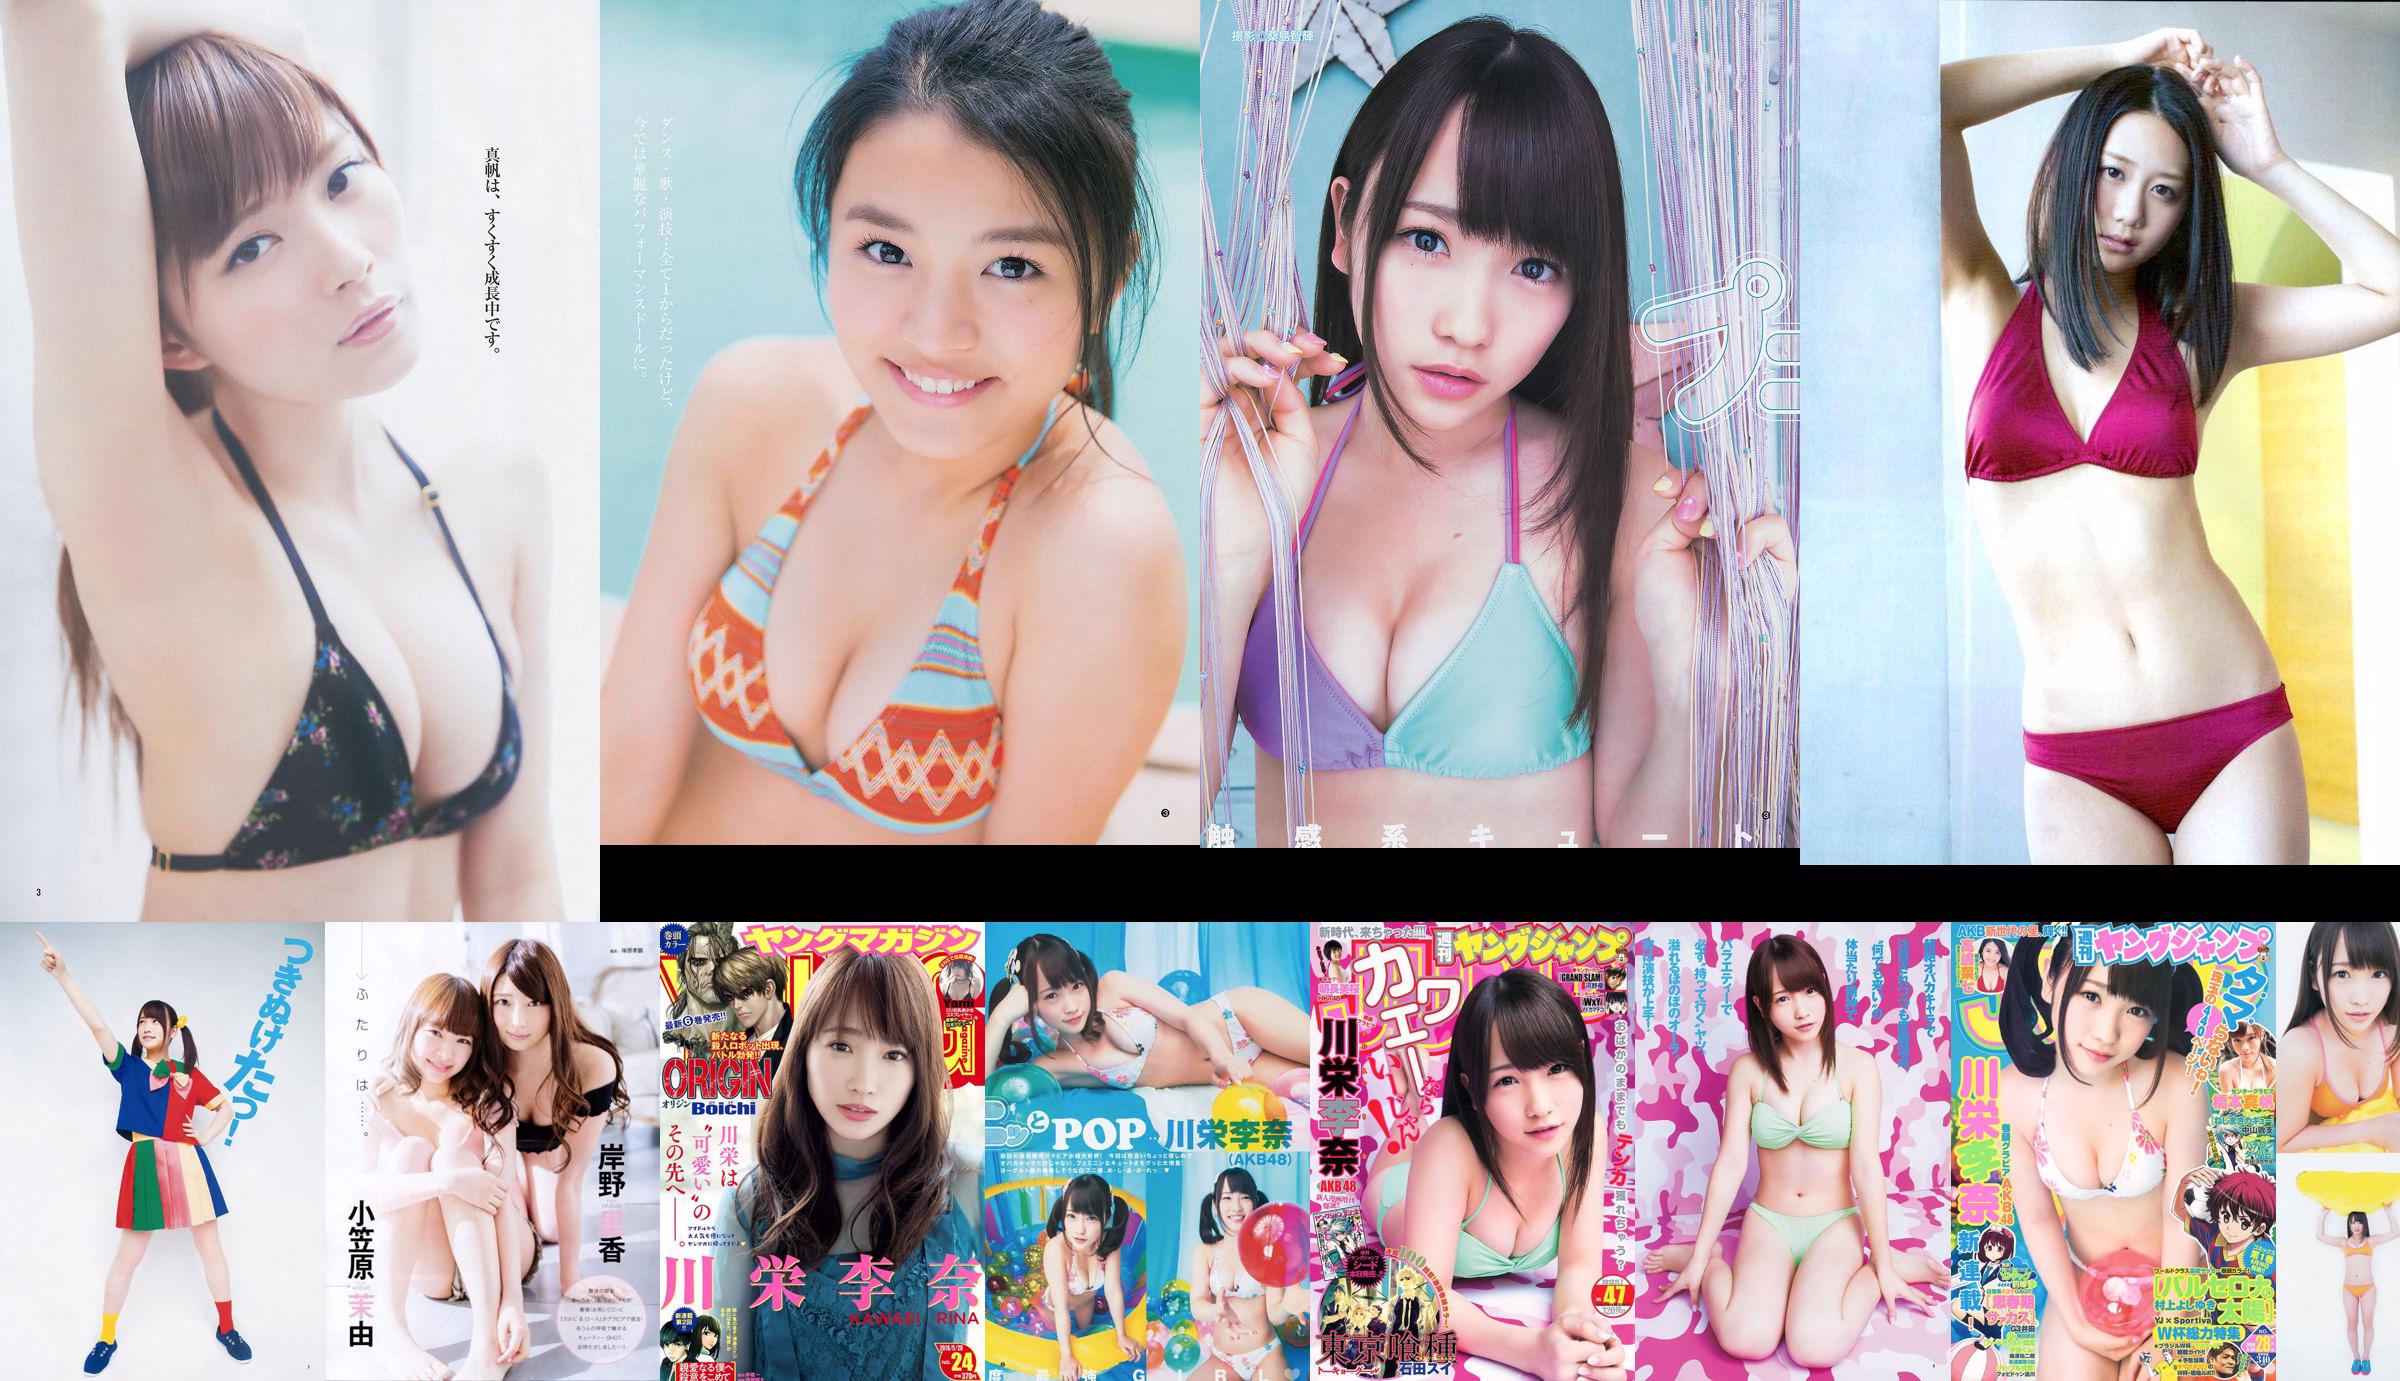 [ENTAME] Kawaei Rina Furuhata Naka e Kishino Rika giugno 2014 Photo Magazine No.e7f1d8 Pagina 1